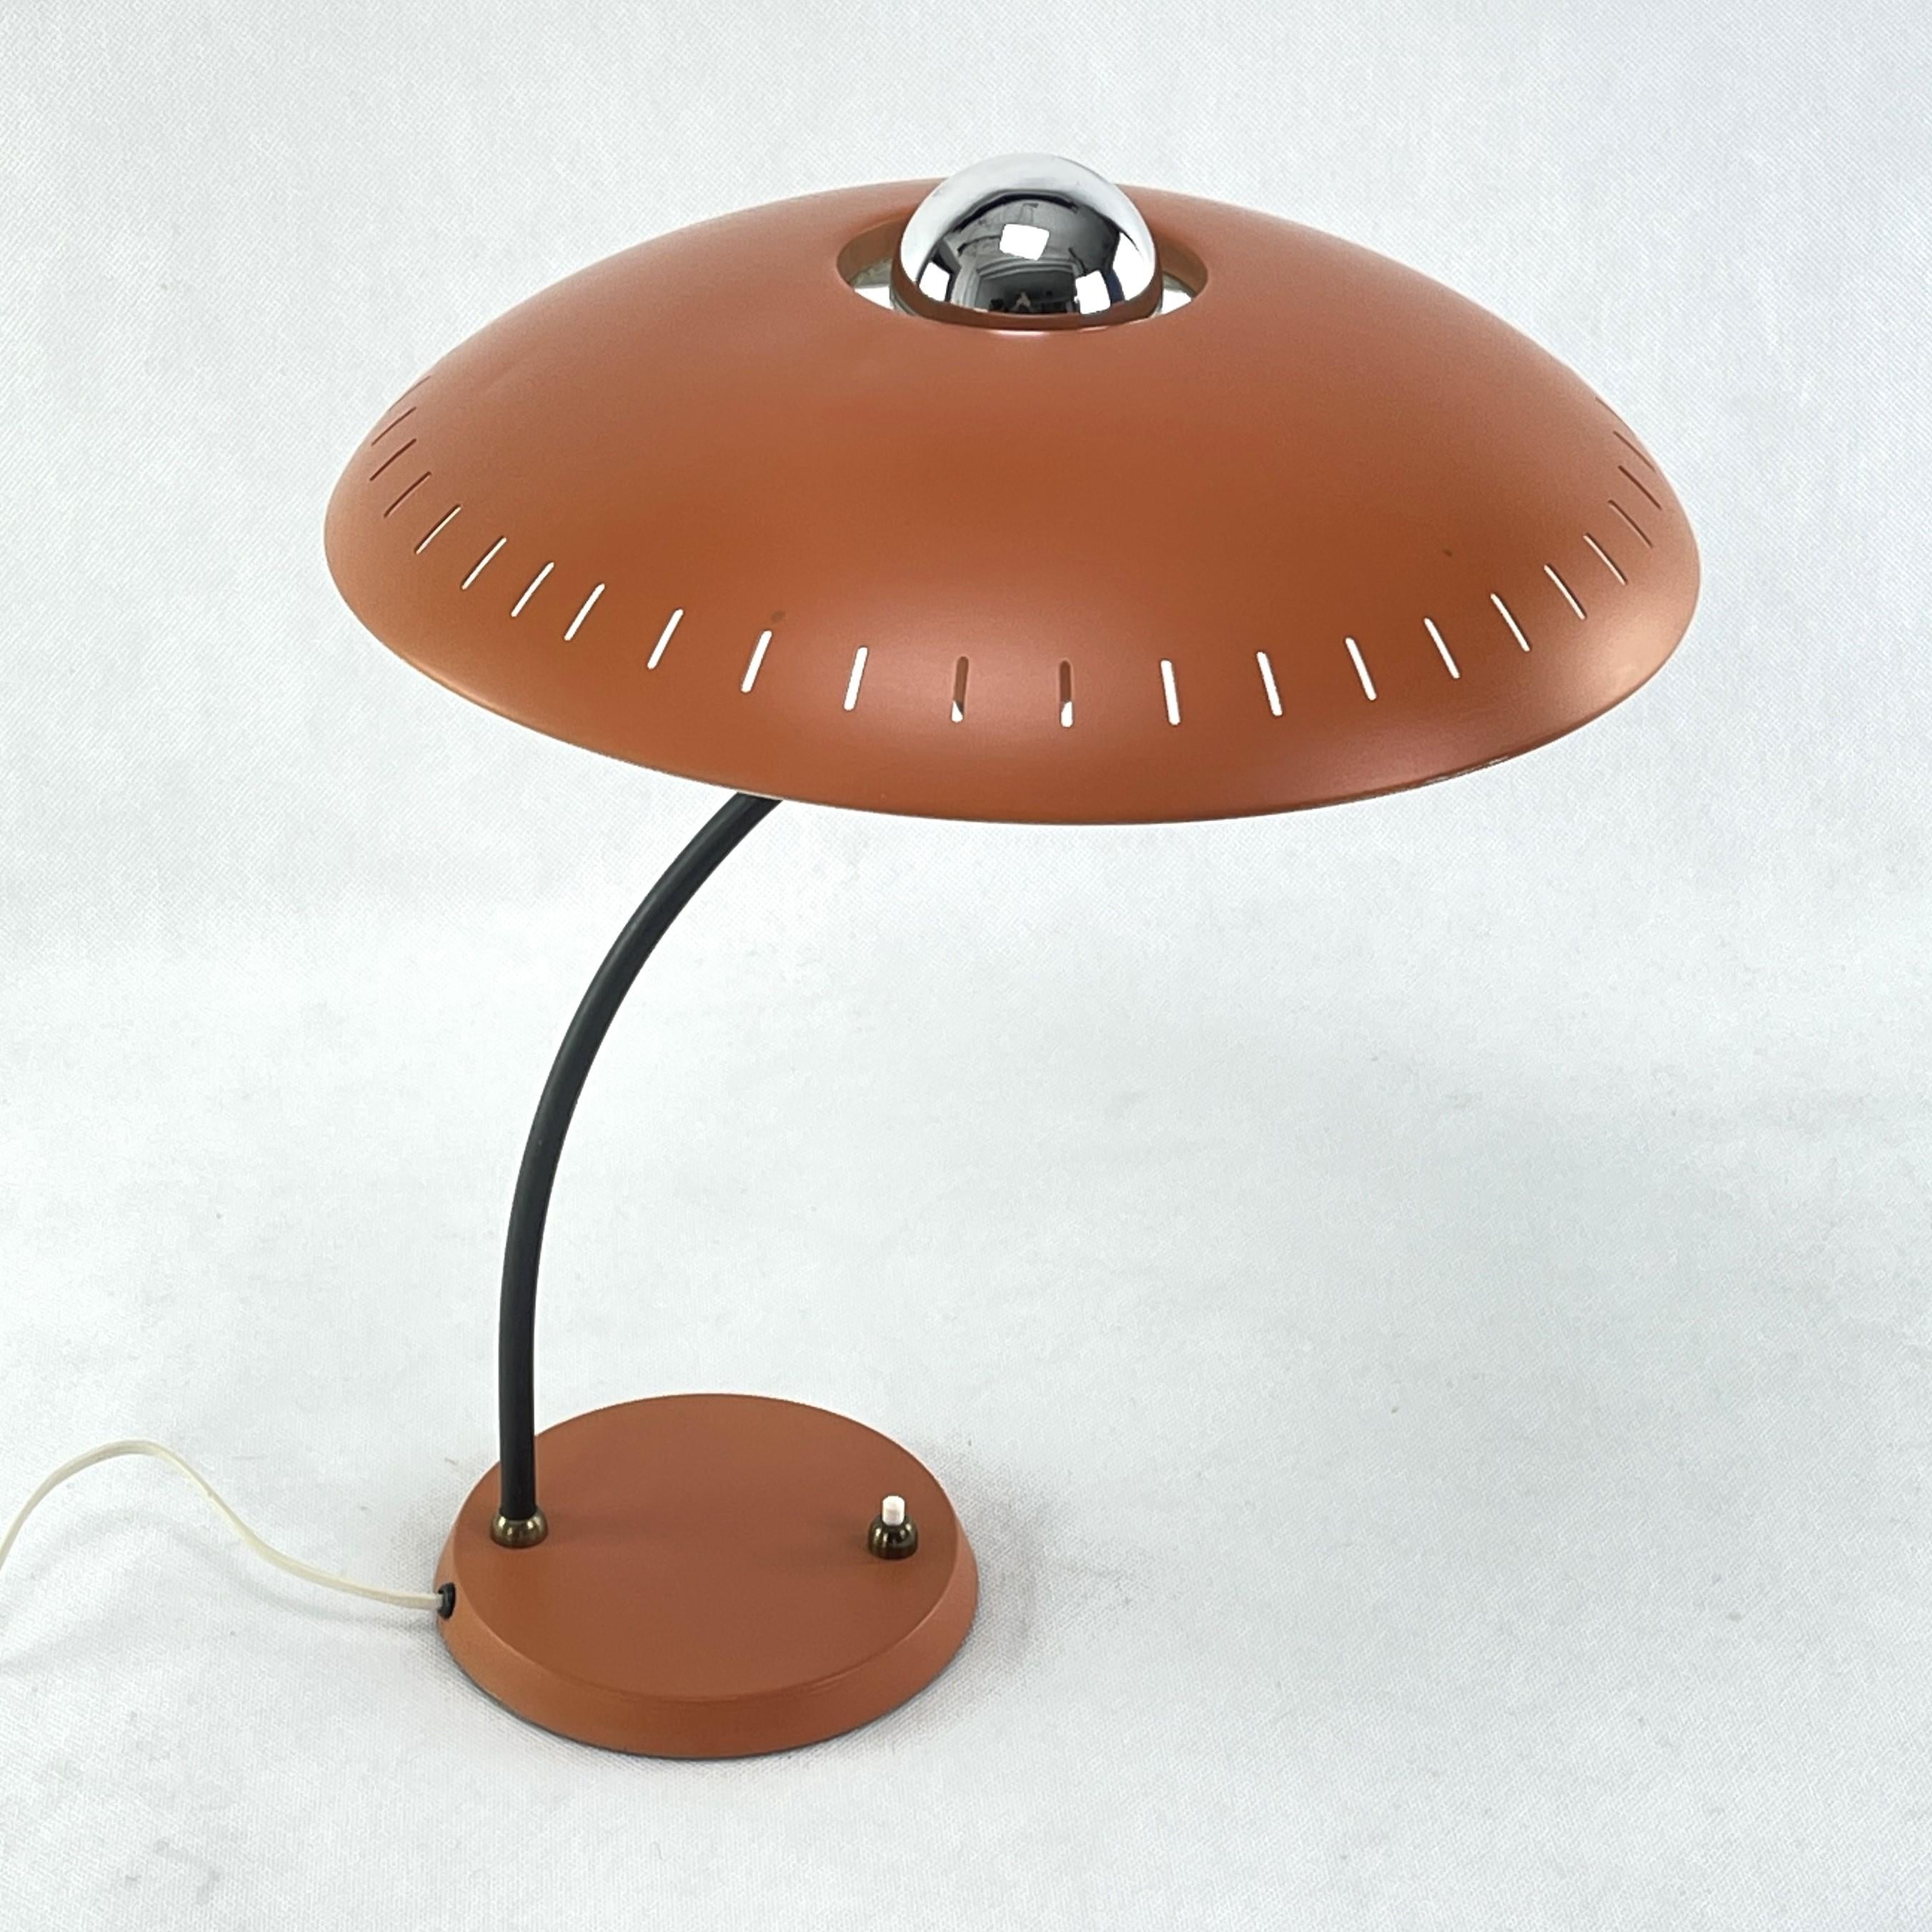 Lampe de table vintage Junior de Philips - années 1950

Cette magnifique lampe est un véritable classique du design des années 50/60. Cette lampe au design extraordinaire est un point fort pour tout intérieur de salon.
Ce modèle est l'œuvre du